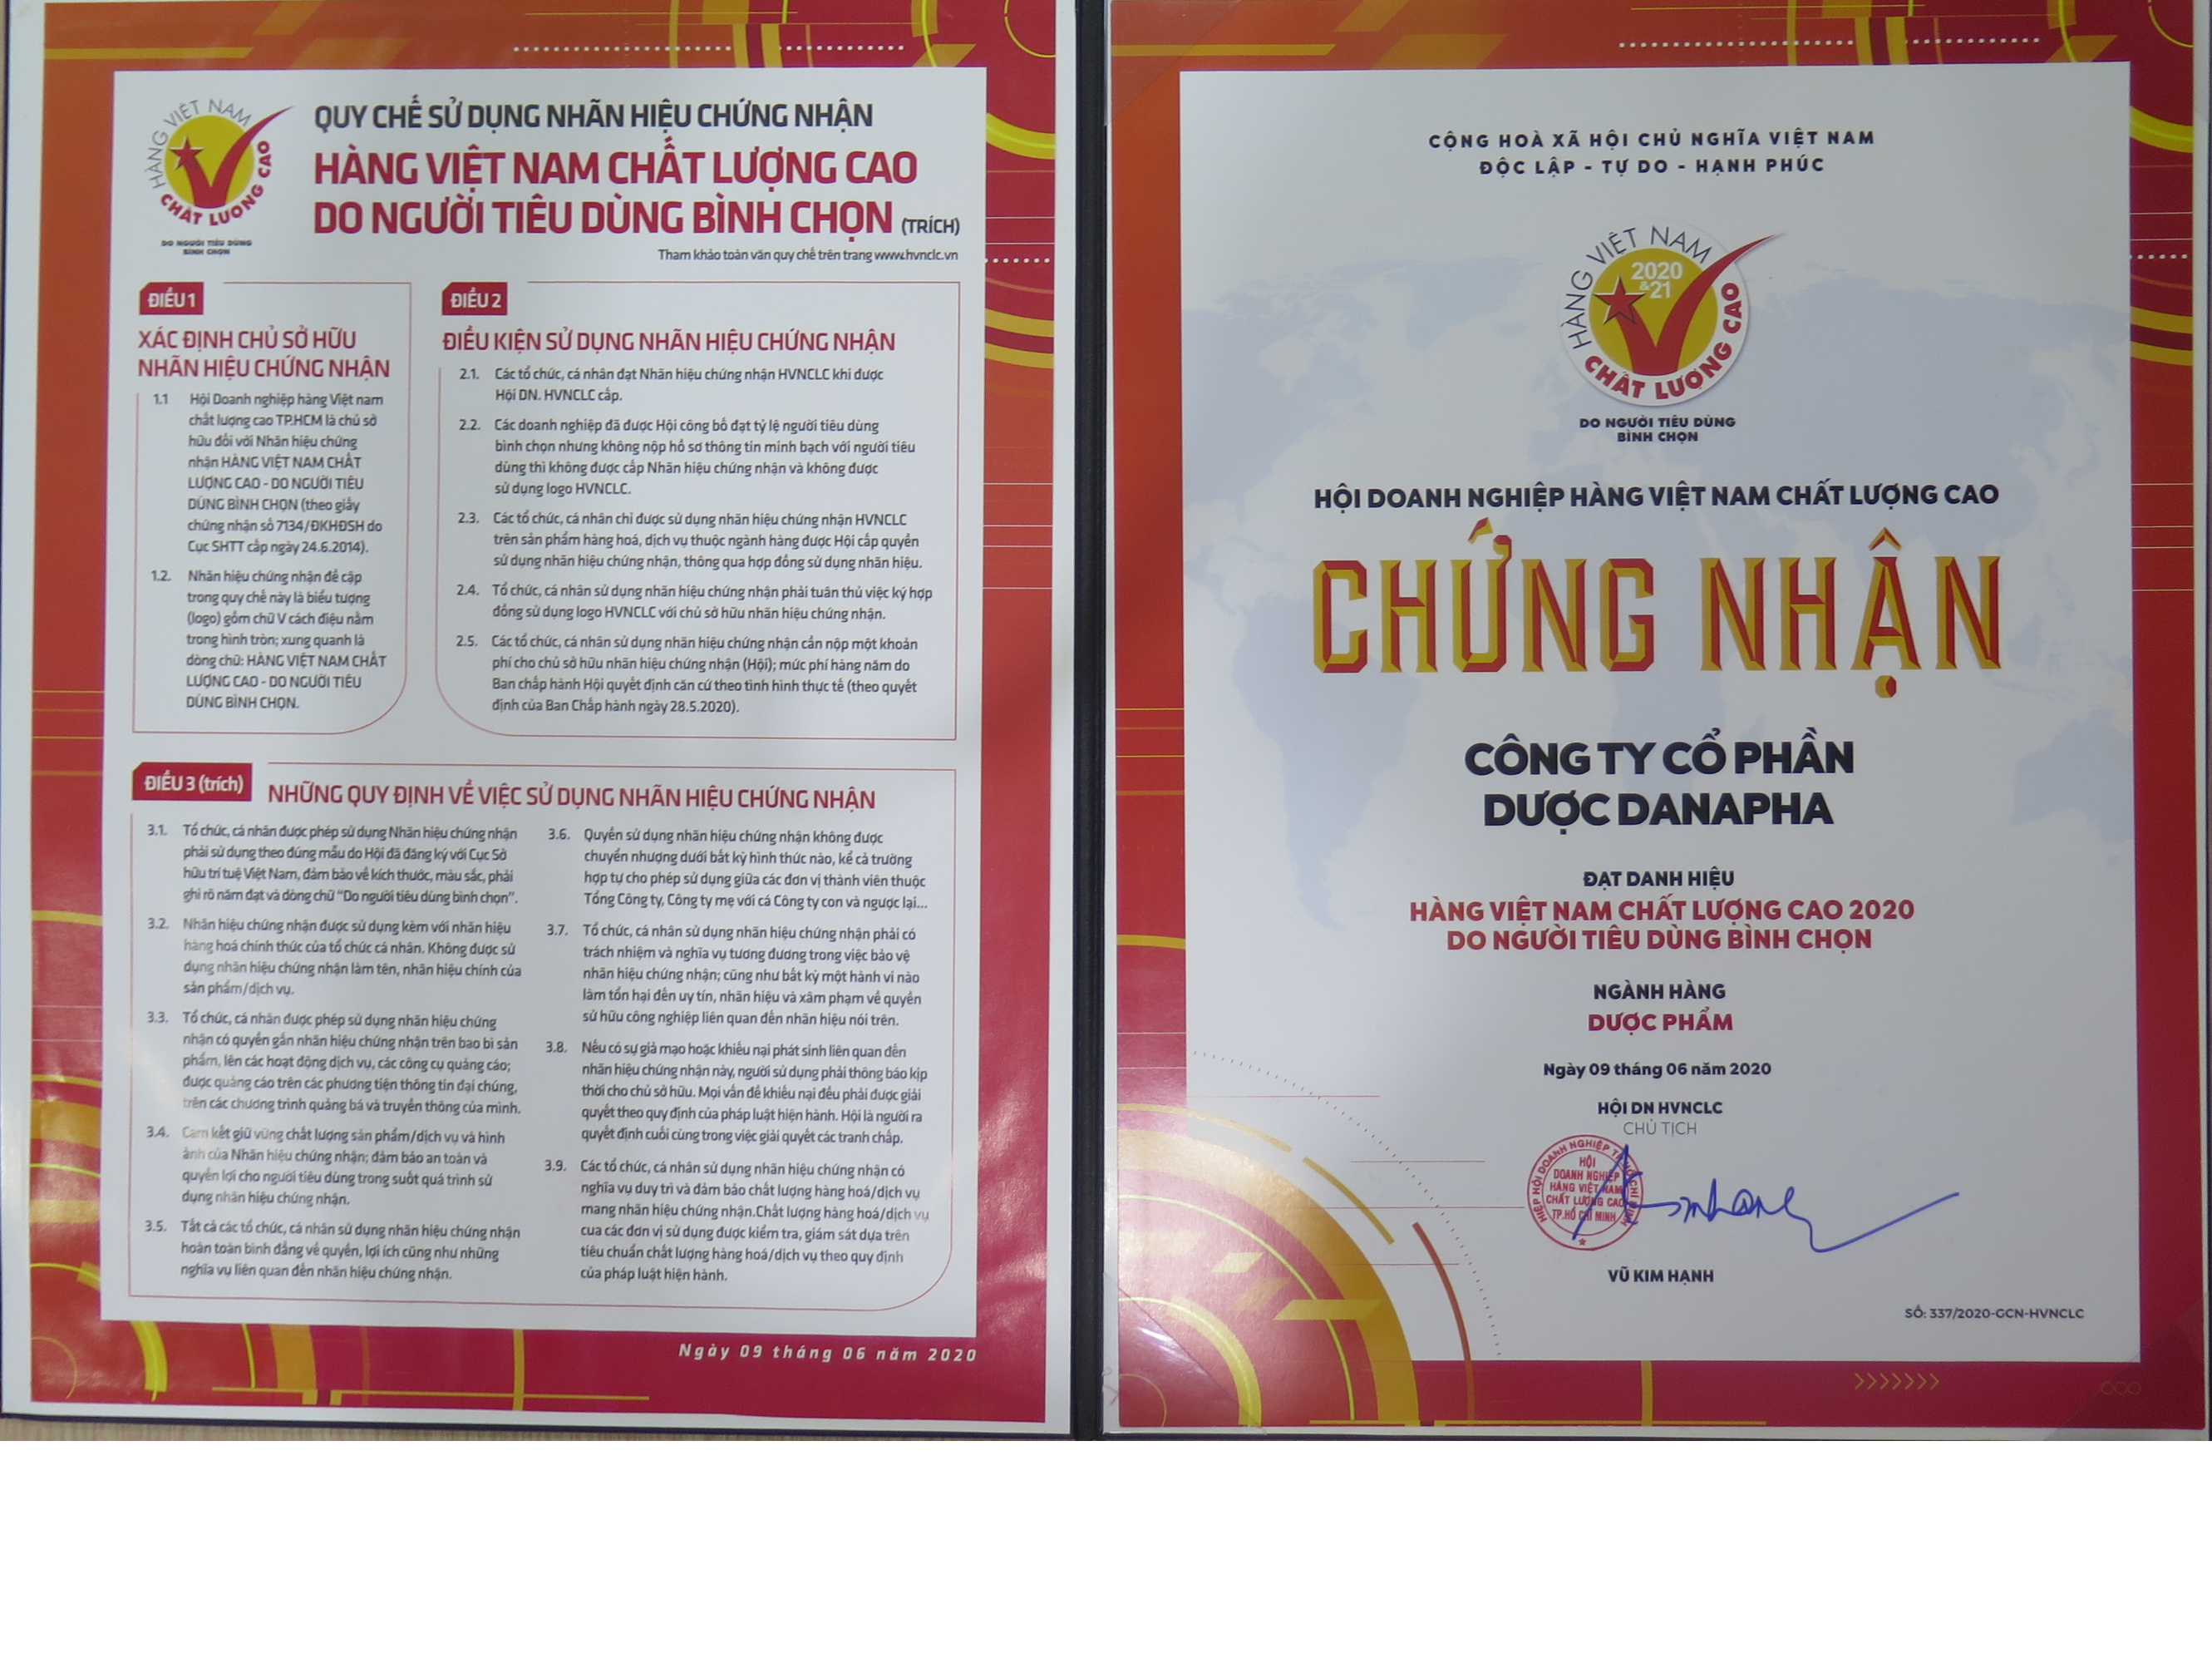 Danapha - Đạt danh hiệu Hàng Việt Nam Chất Lượng Cao 2020 